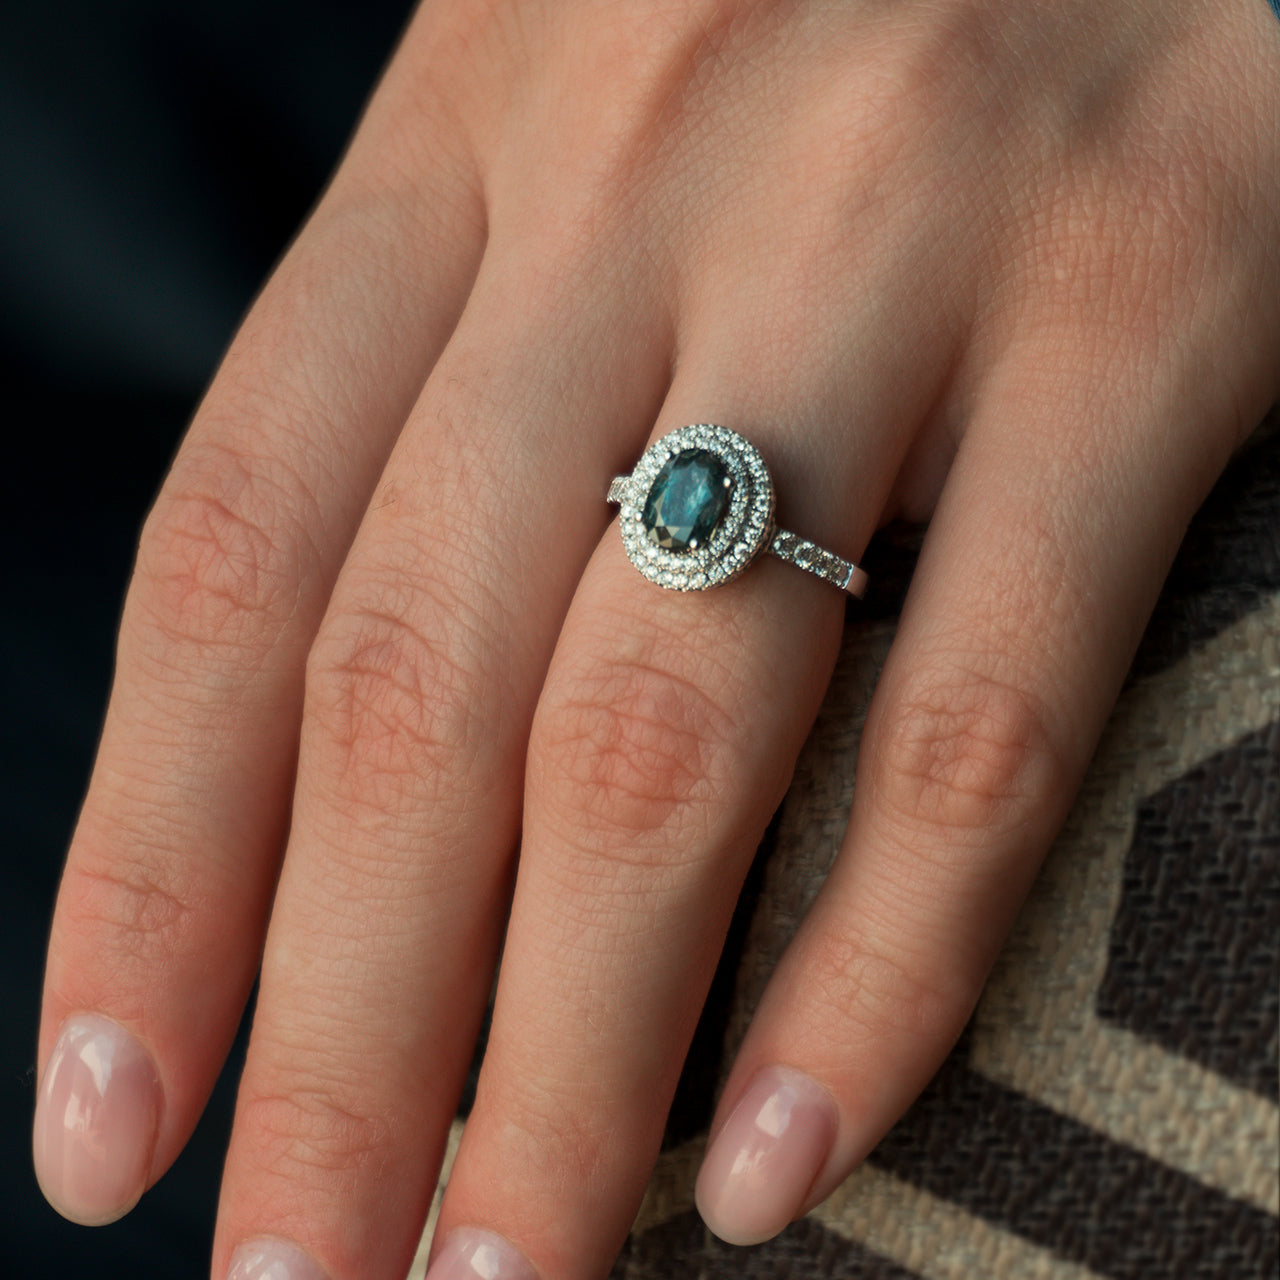 Elegant 1.17ct alexandrite ring in 18k white gold on a female finger